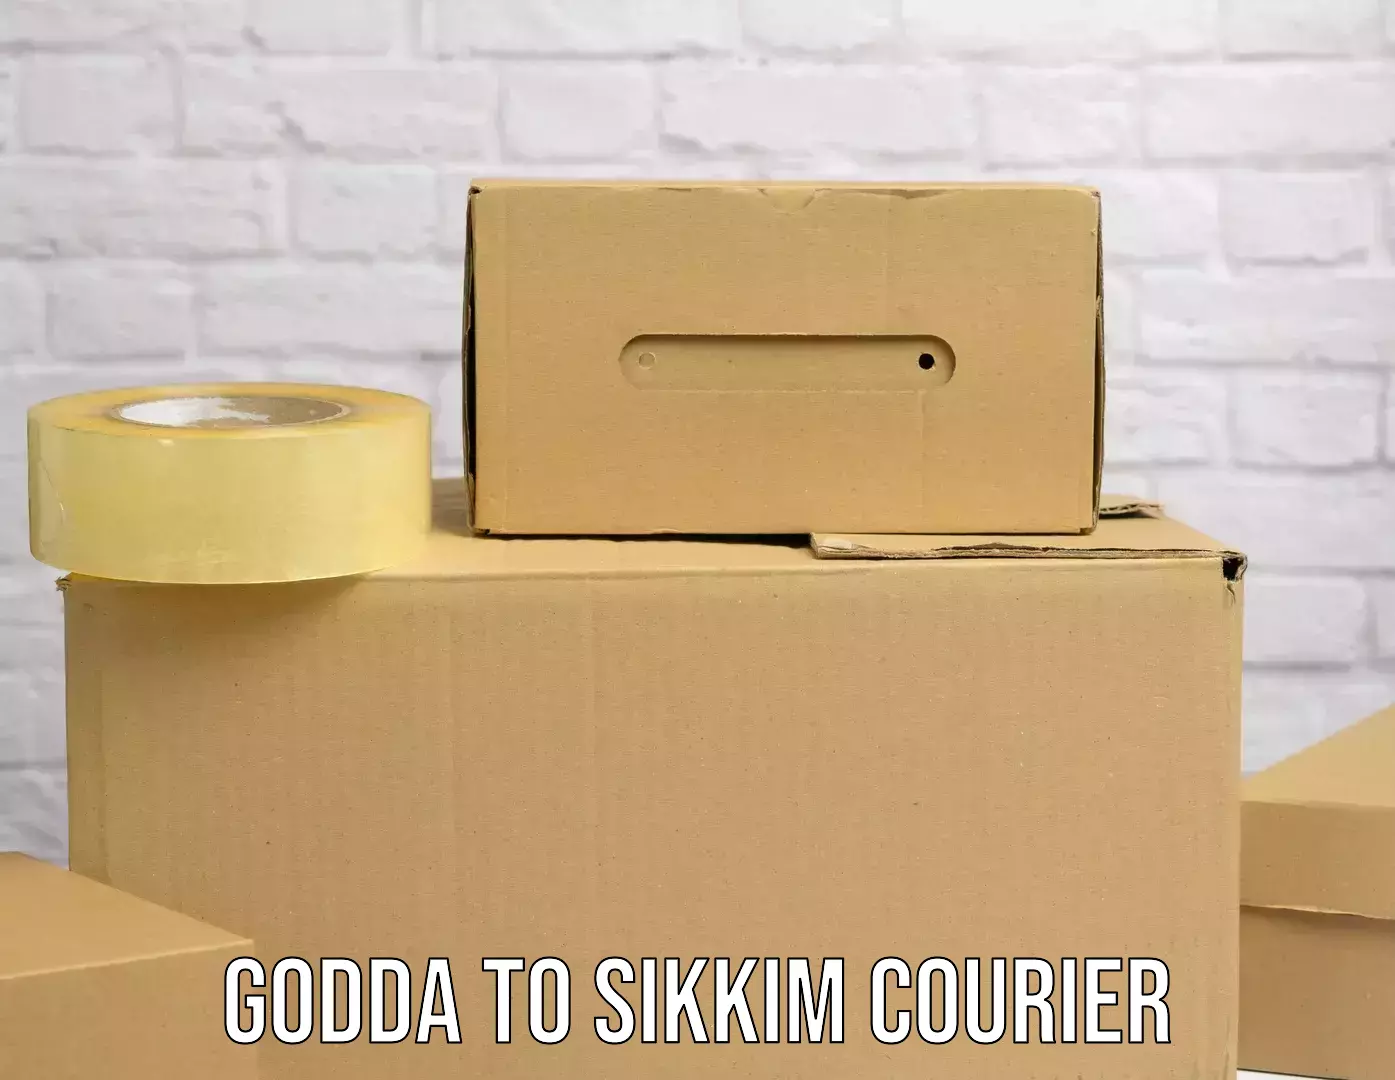 Efficient freight service Godda to Sikkim